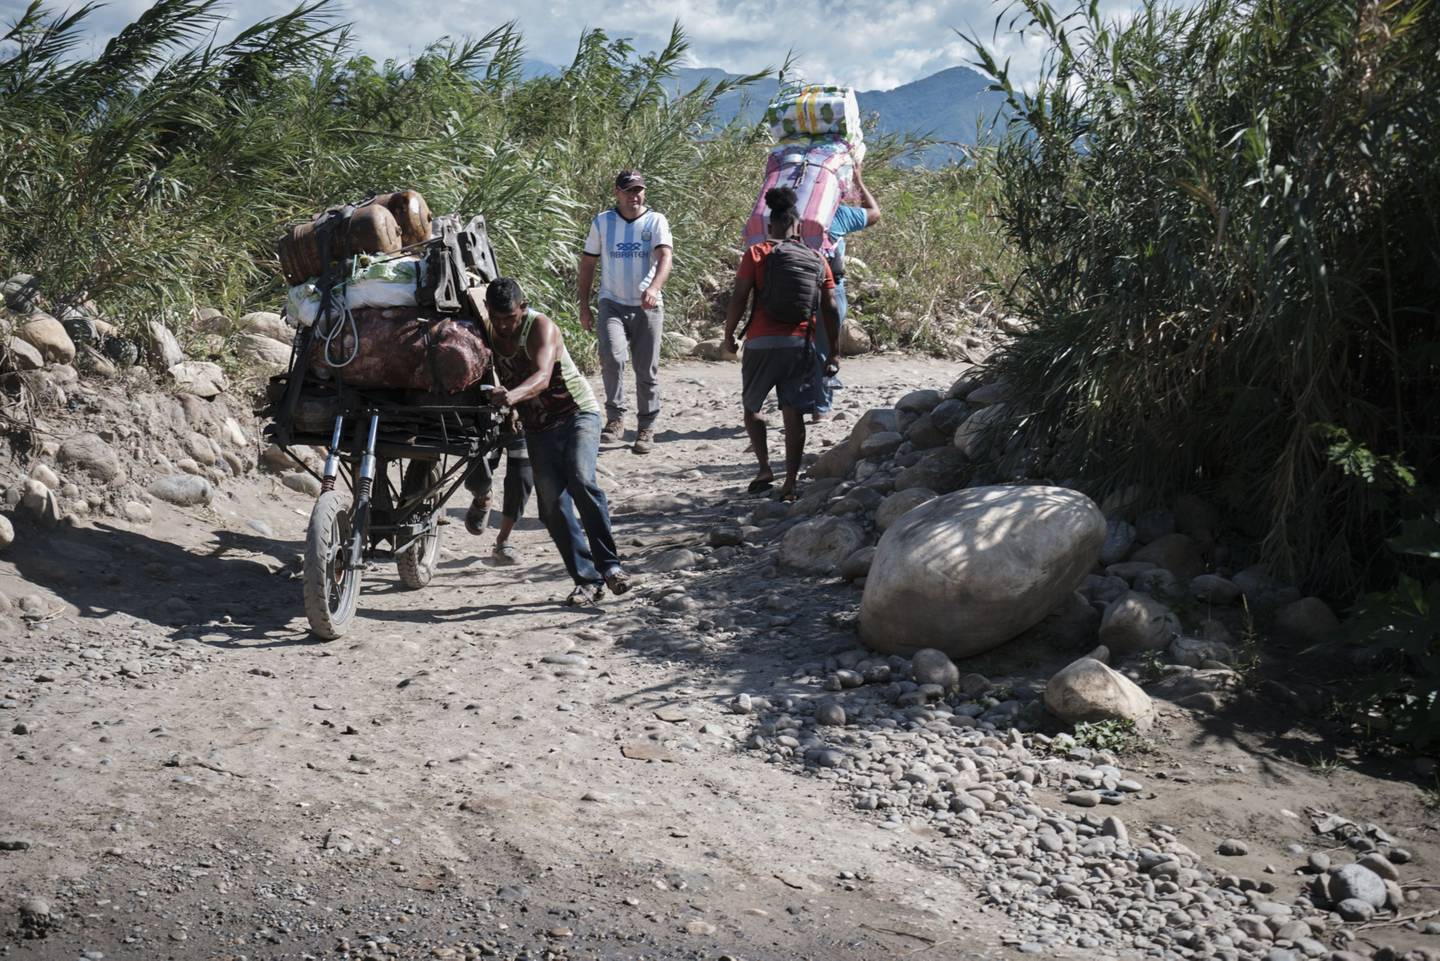 Los residentes que llevan mercancías caminan a lo largo de un sendero cerca del puente internacional Francisco de Paula Santander mientras se reabre cerca de la frontera con Venezuela en Cúcuta, Colombia, el lunes 8 de agosto de 2022.dfd